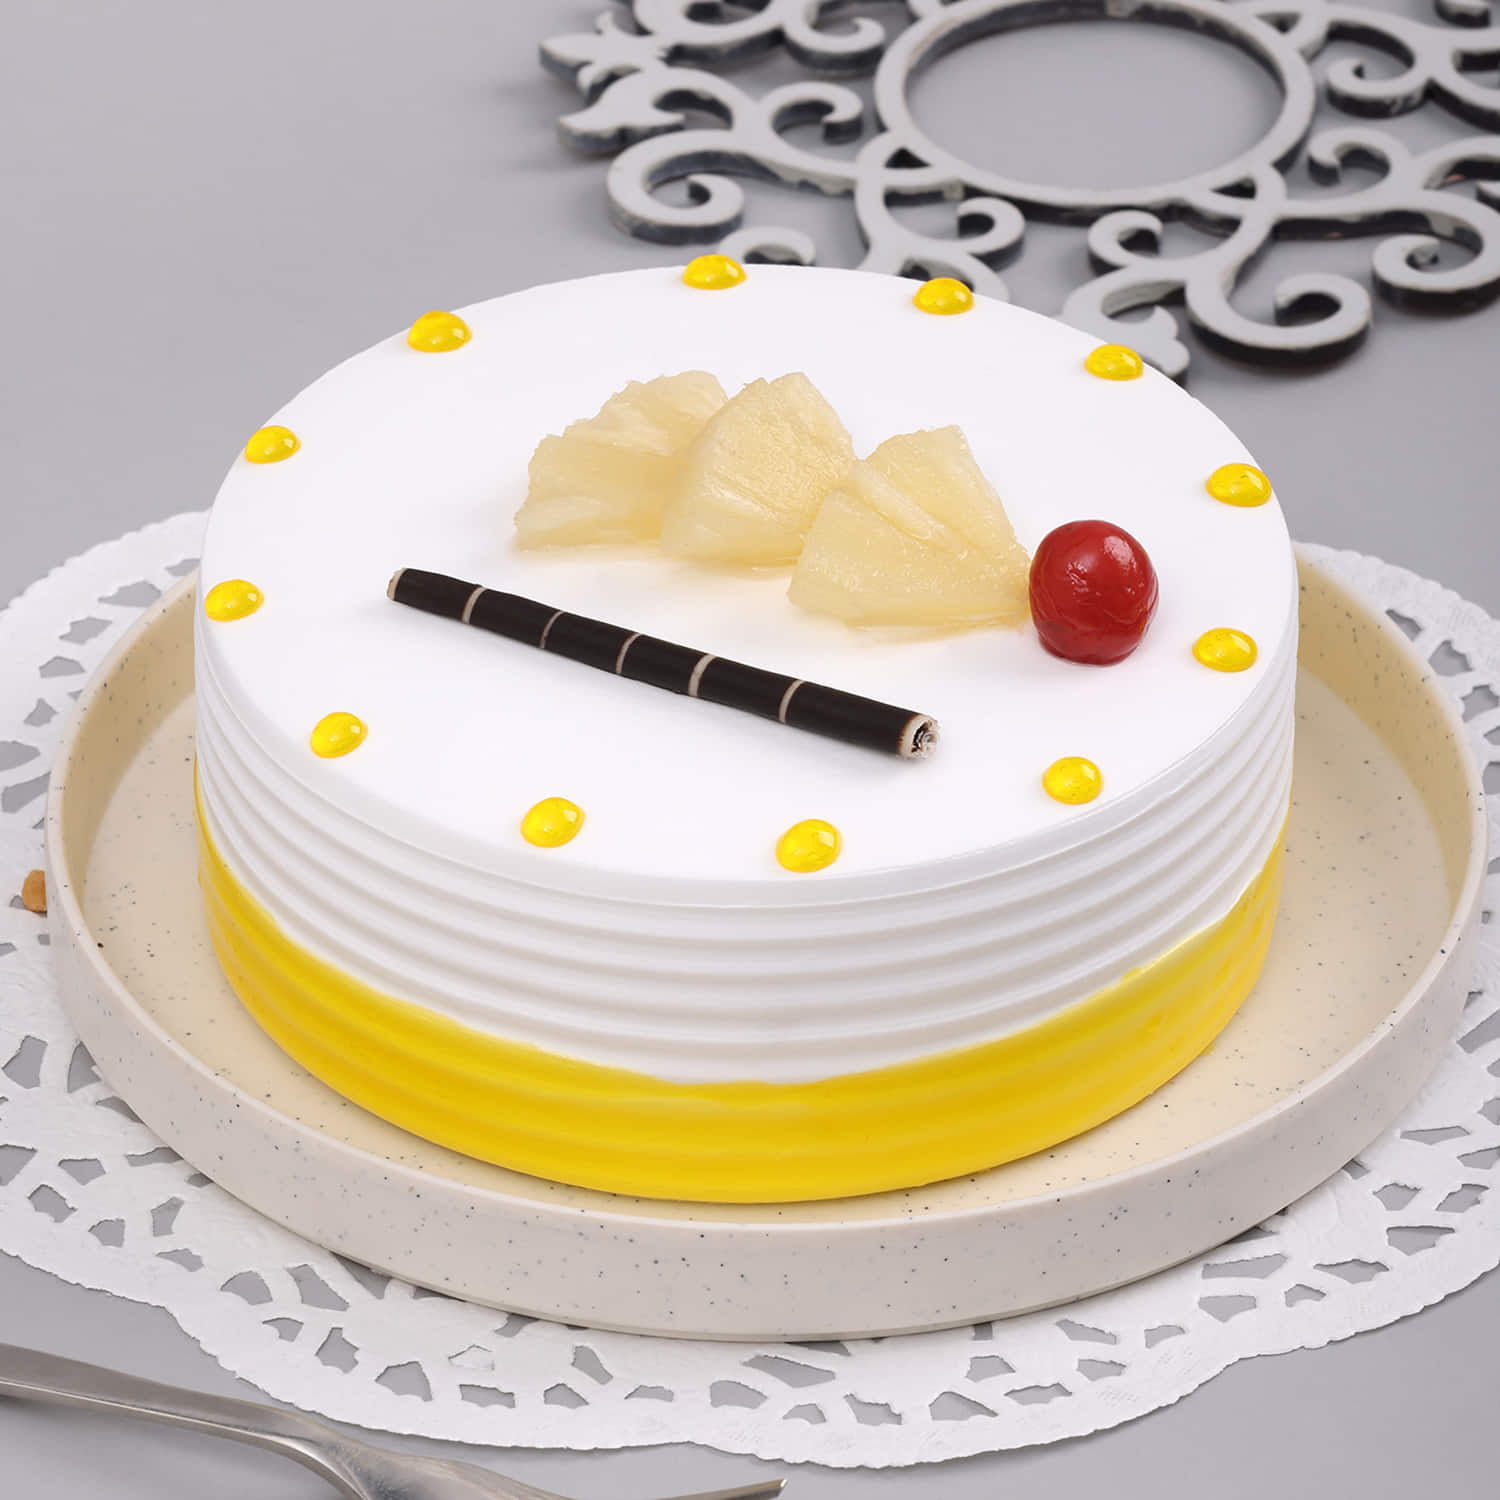 Buy/Send Tempting Ferrero Rocher Cake Half kg Online- Winni | Winni.in